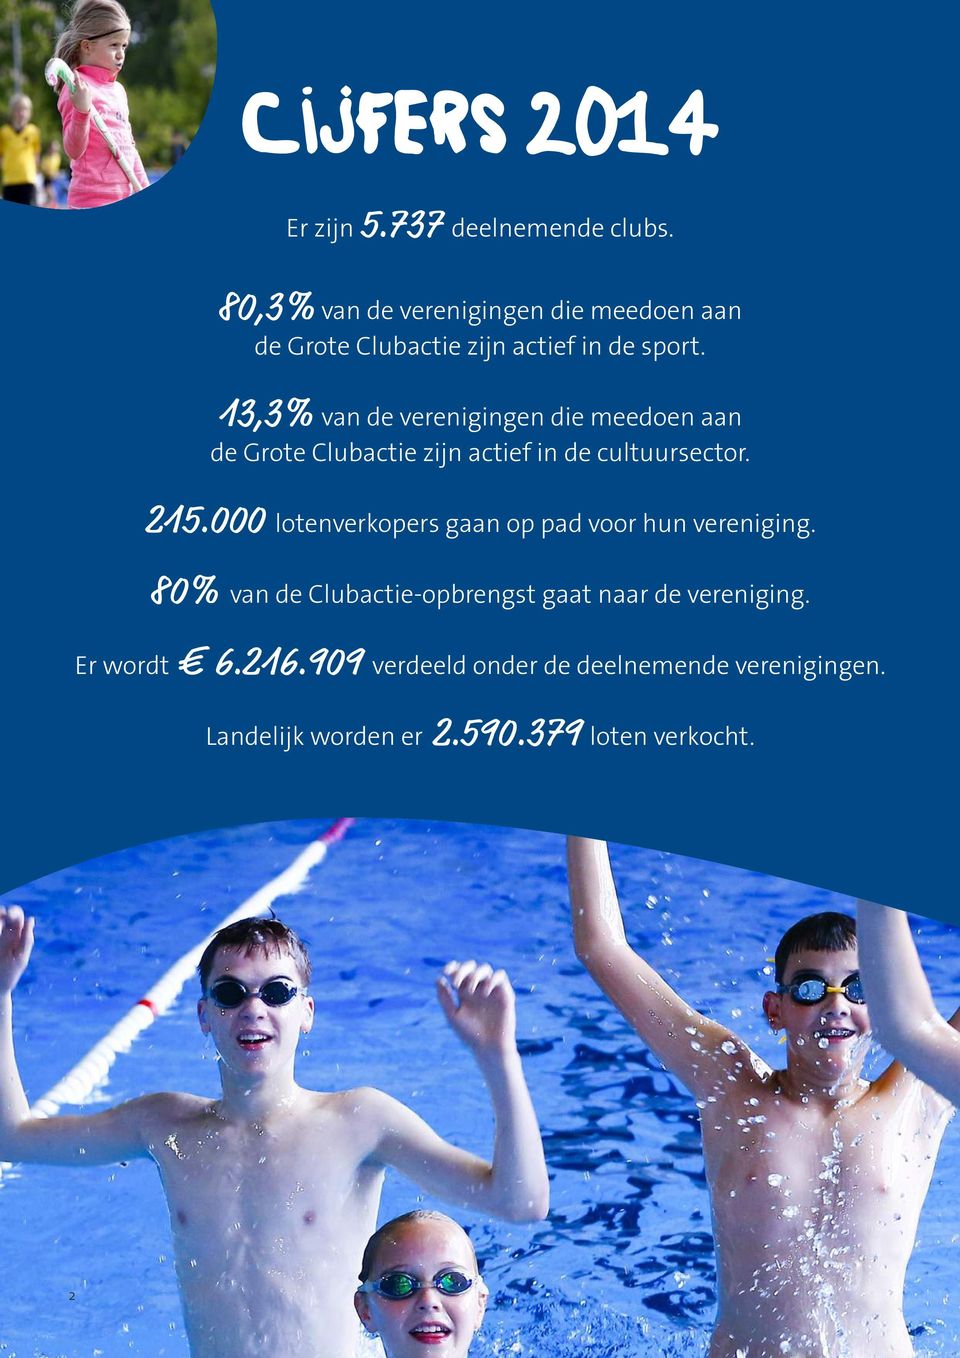 13,3% van de verenigingen die meedoen aan de Grote Clubactie zijn actief in de cultuursector. 215.